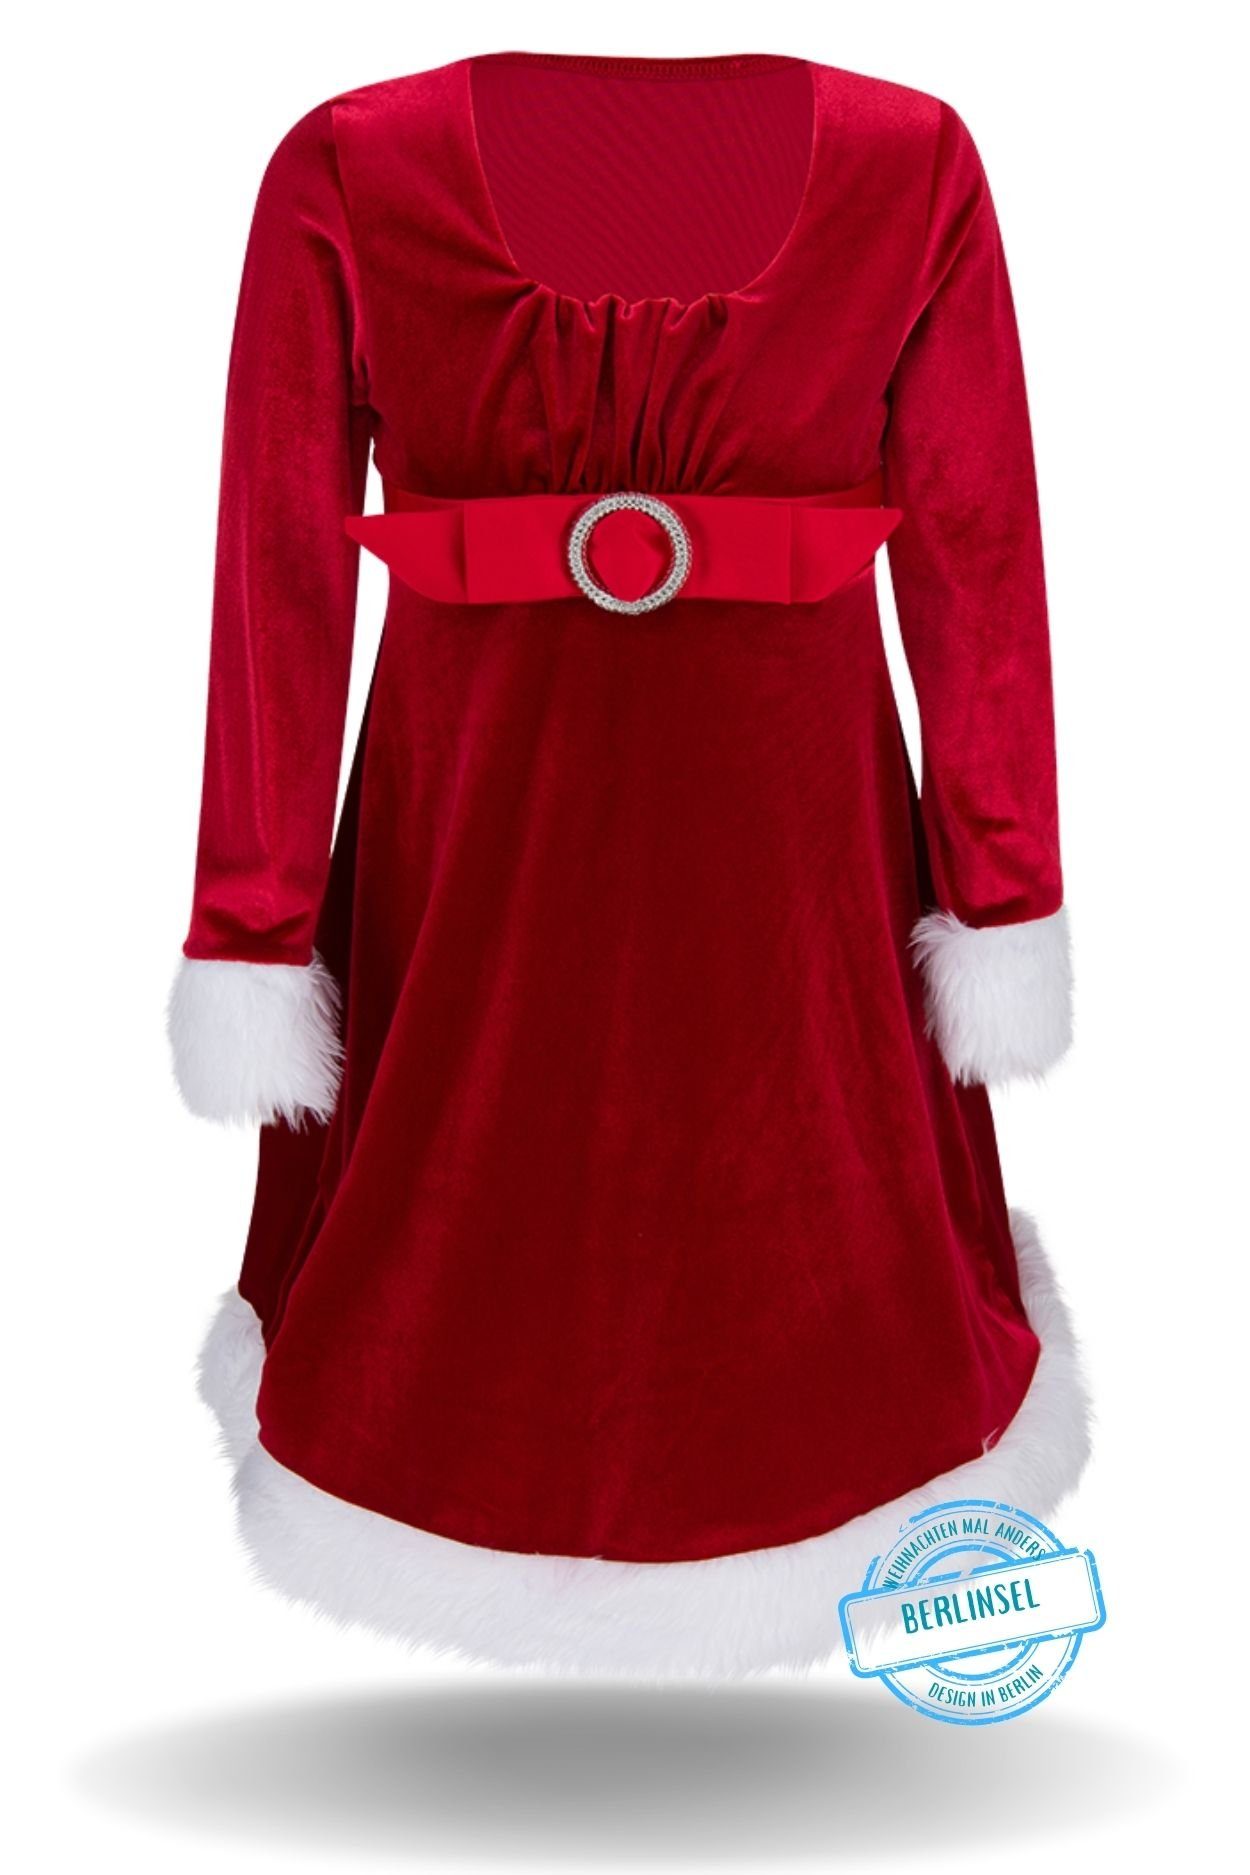 Berlinsel Abendkleid Mädchen Weihnachtskleid Partykleid Festtagskleid Weihnachtsoutfit für Weihnachtsabend, Weihnachtsfoto oder als Weihnachtsgeschenk 2023 Rot